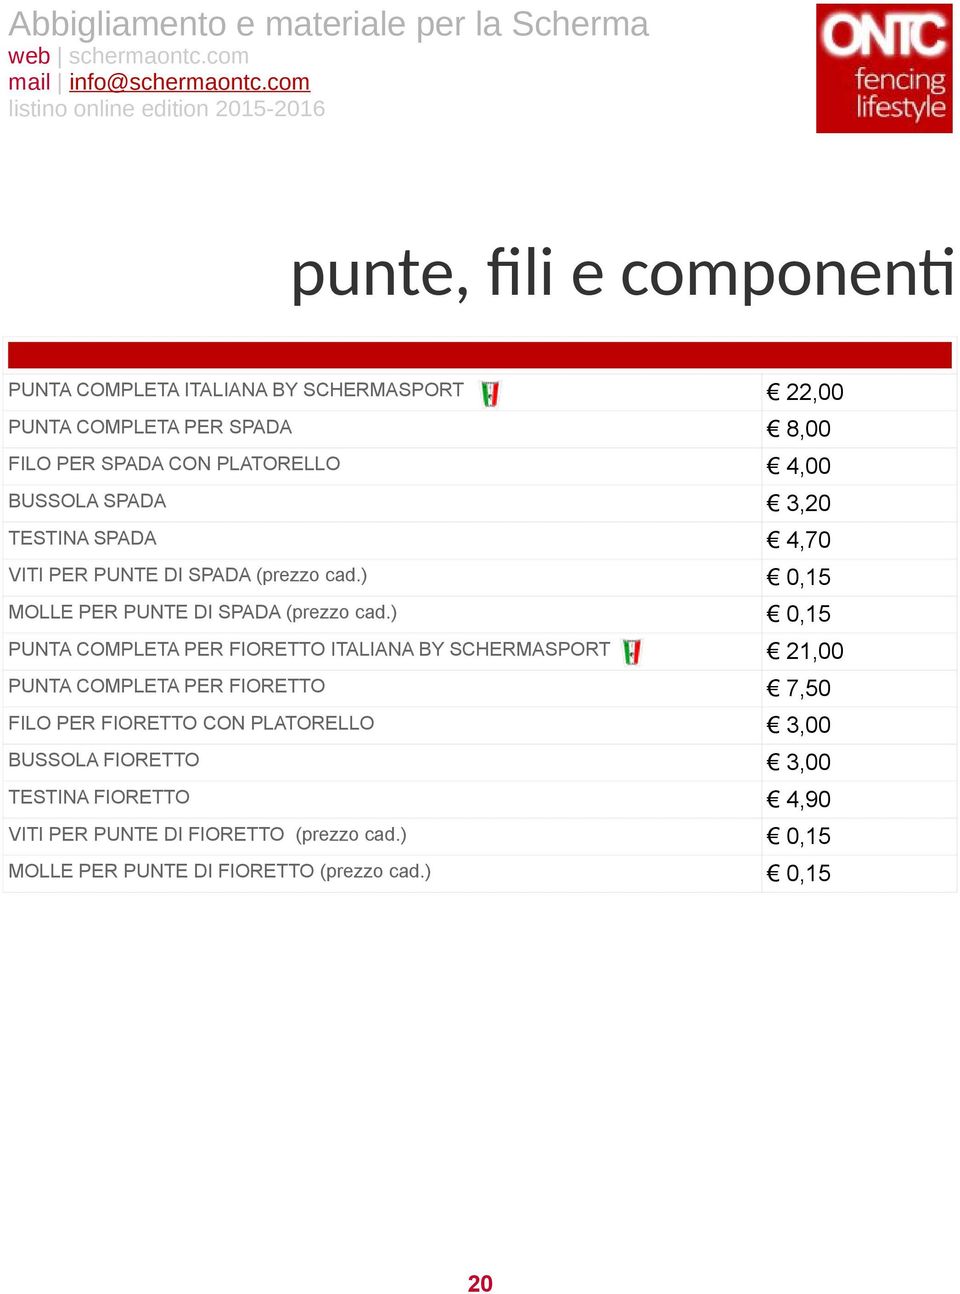 ) 0,15 PUNTA COMPLETA PER FIORETTO ITALIANA BY SCHERMASPORT 21,00 PUNTA COMPLETA PER FIORETTO 7,50 FILO PER FIORETTO CON PLATORELLO